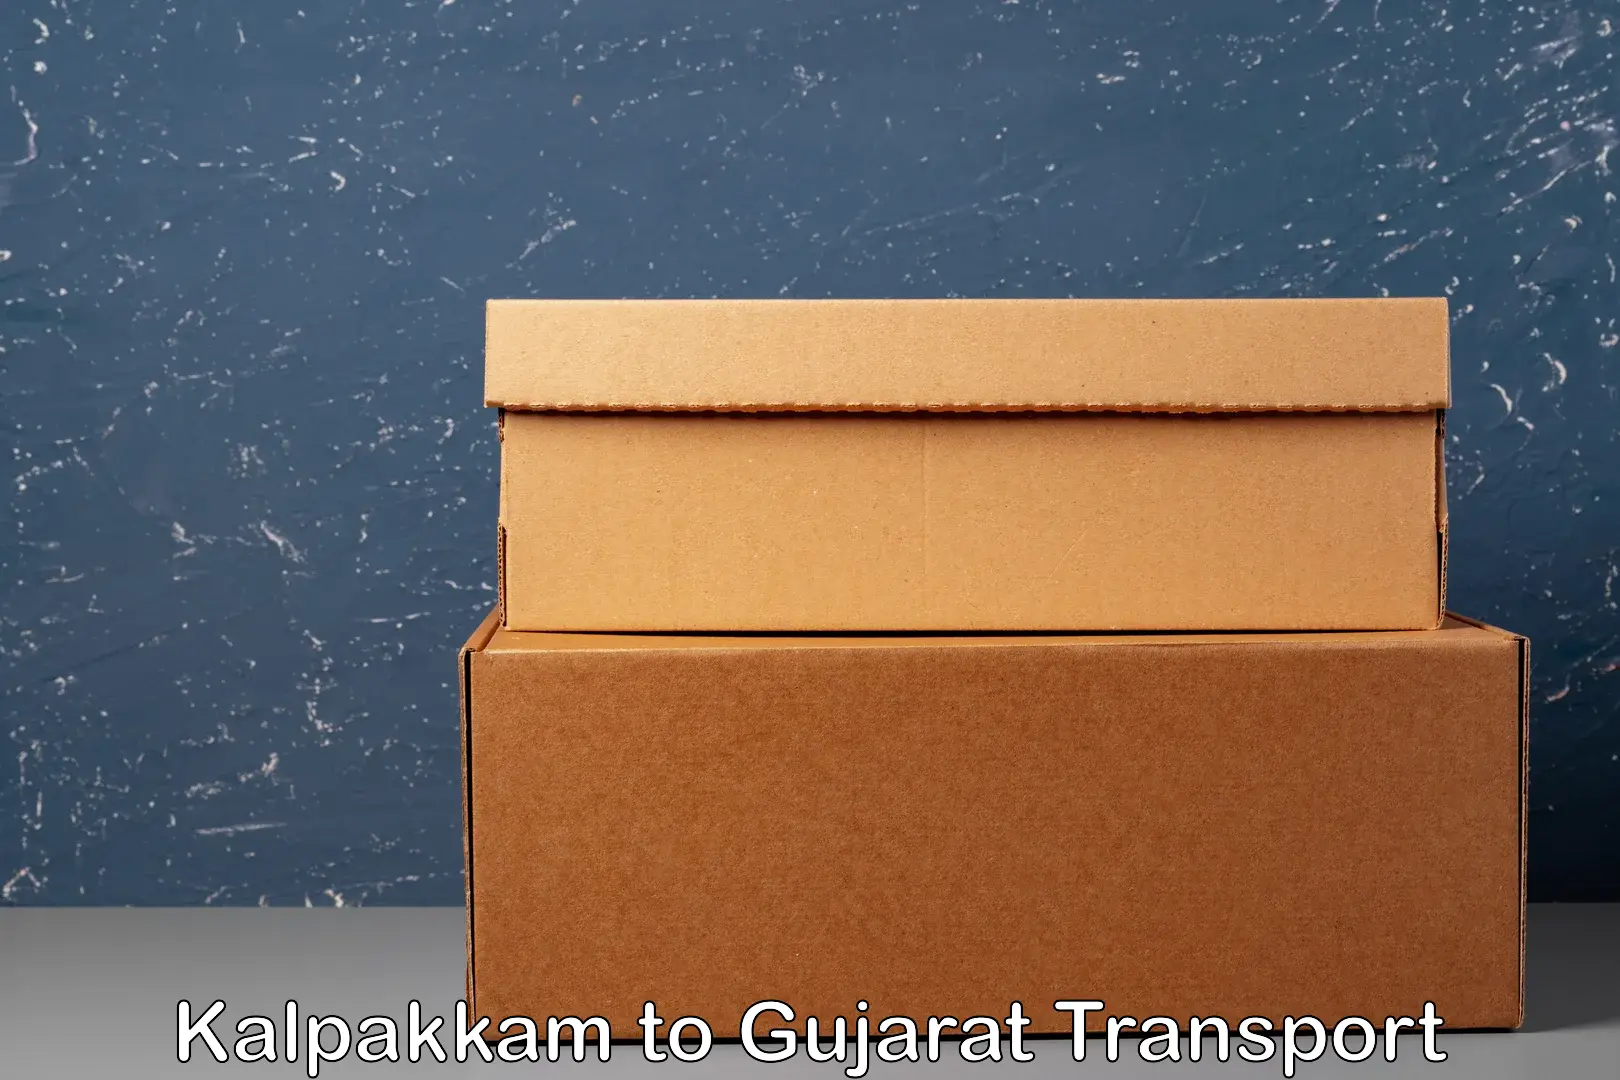 Goods delivery service Kalpakkam to Gujarat